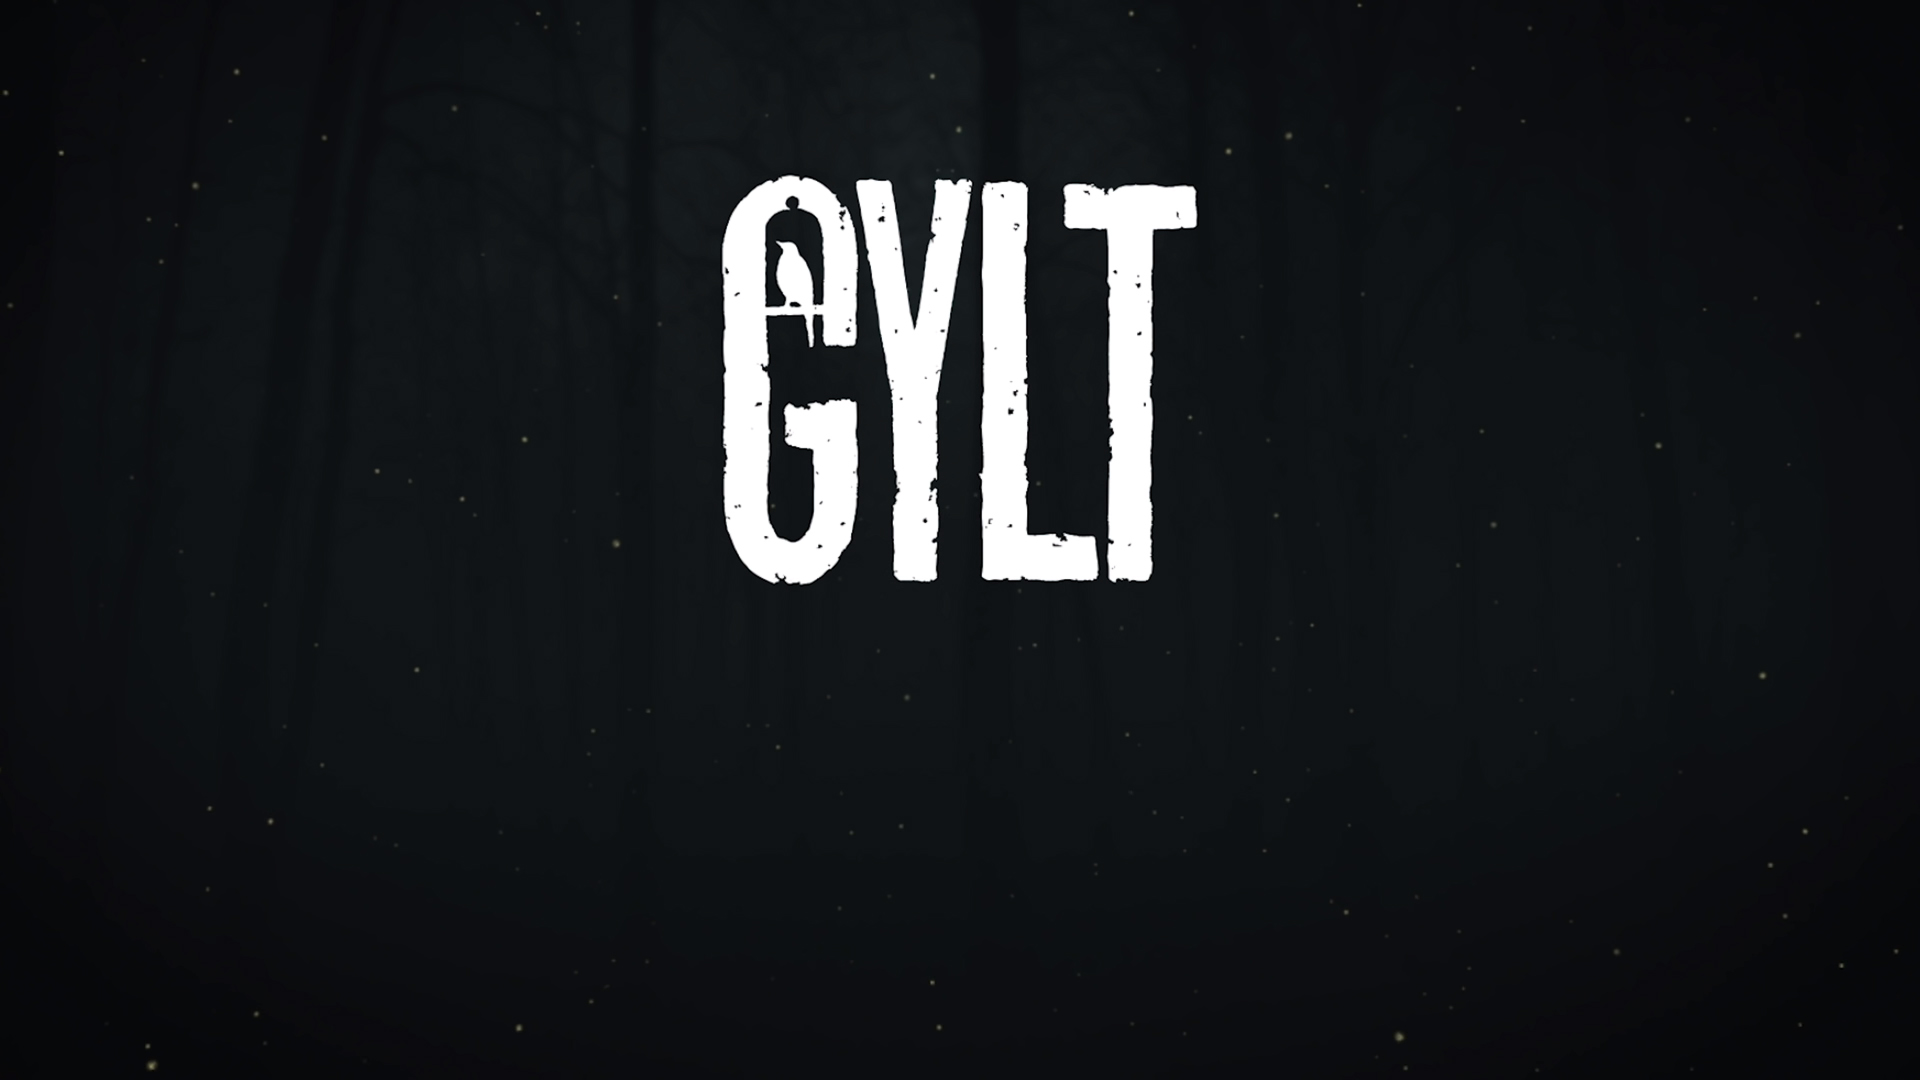 gylt story explained